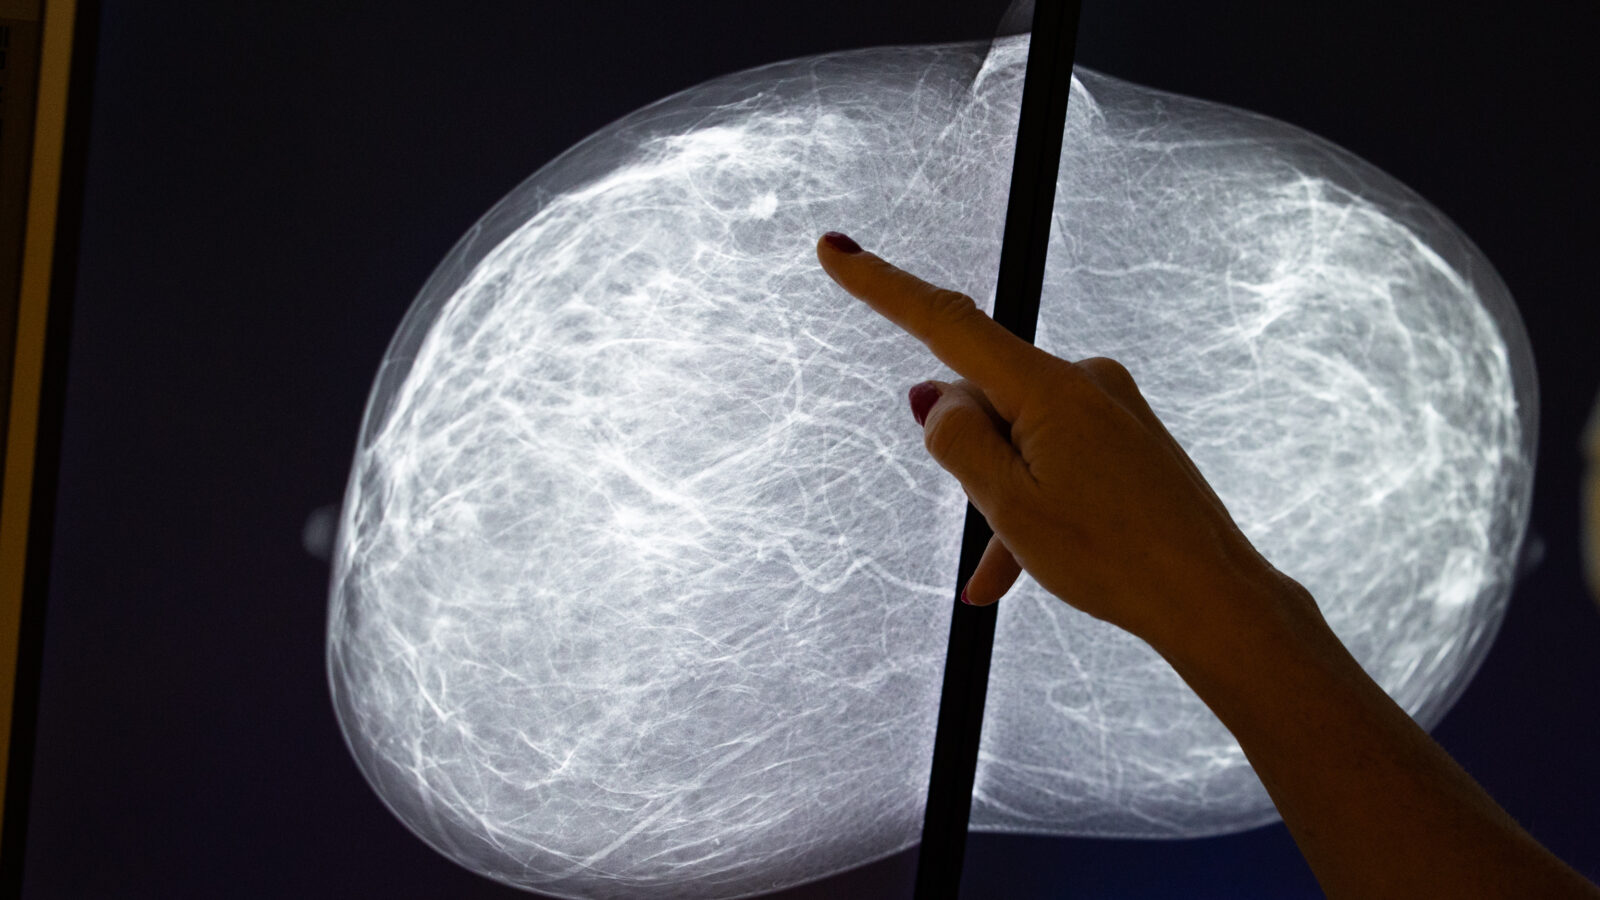 عرض صورة ماموغرام في عيادة لأمراض الثدي في بروكسل. كثافة الثدي هي عامل خطر معروف للإصابة بسرطان الثدي.